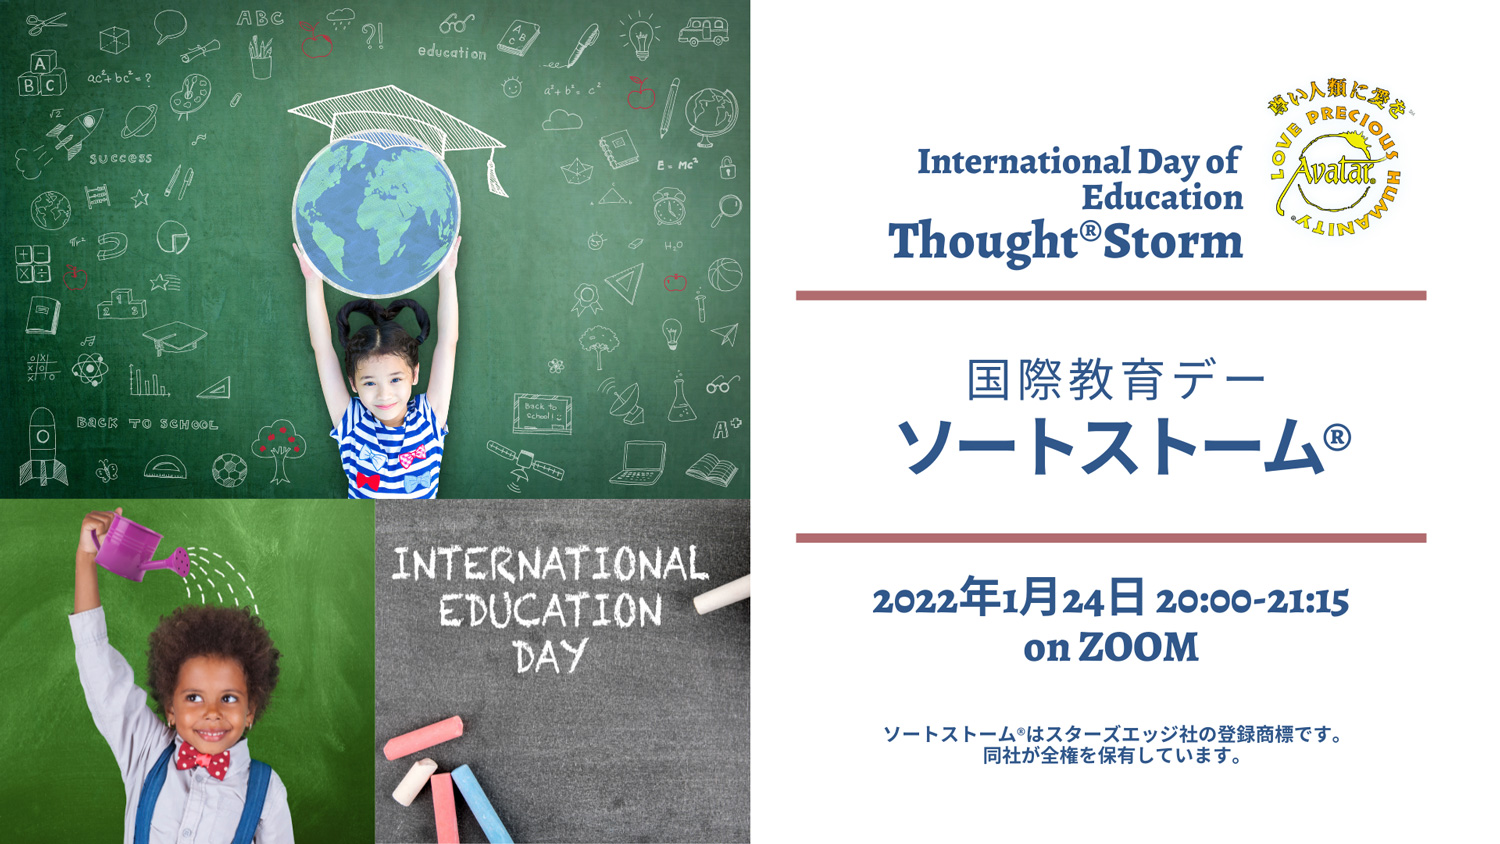 2022年 国際デーにちなんだソートストーム®︎を、1年を通して開催します。1月24日は、教育の国際デーにちなんだテーマでソートストームを行います。